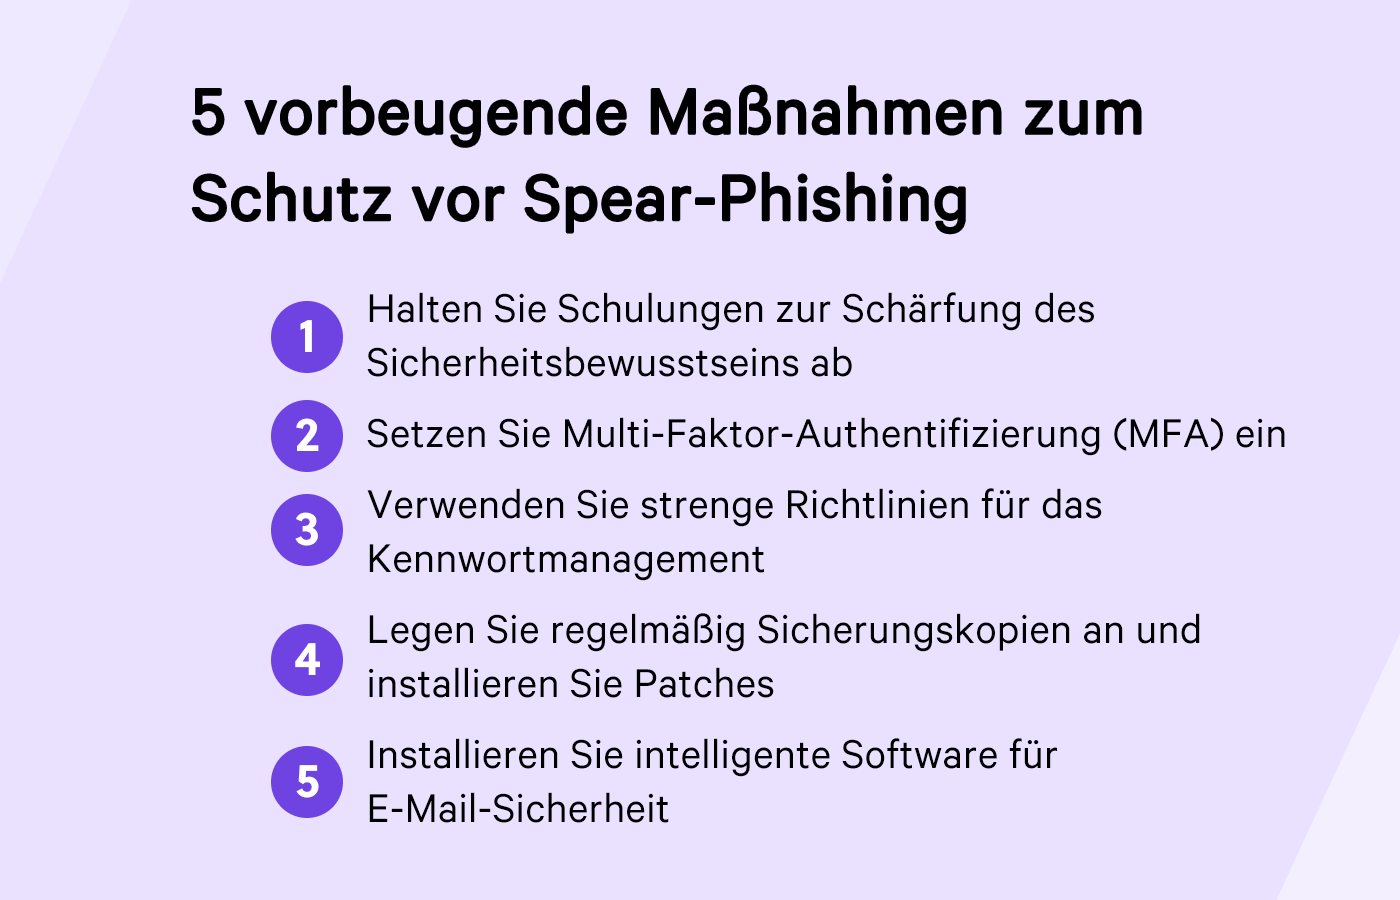 Abbildung mit 5 vorbeugenden Maßnahmen zum Schutz vor Spear-Phishing